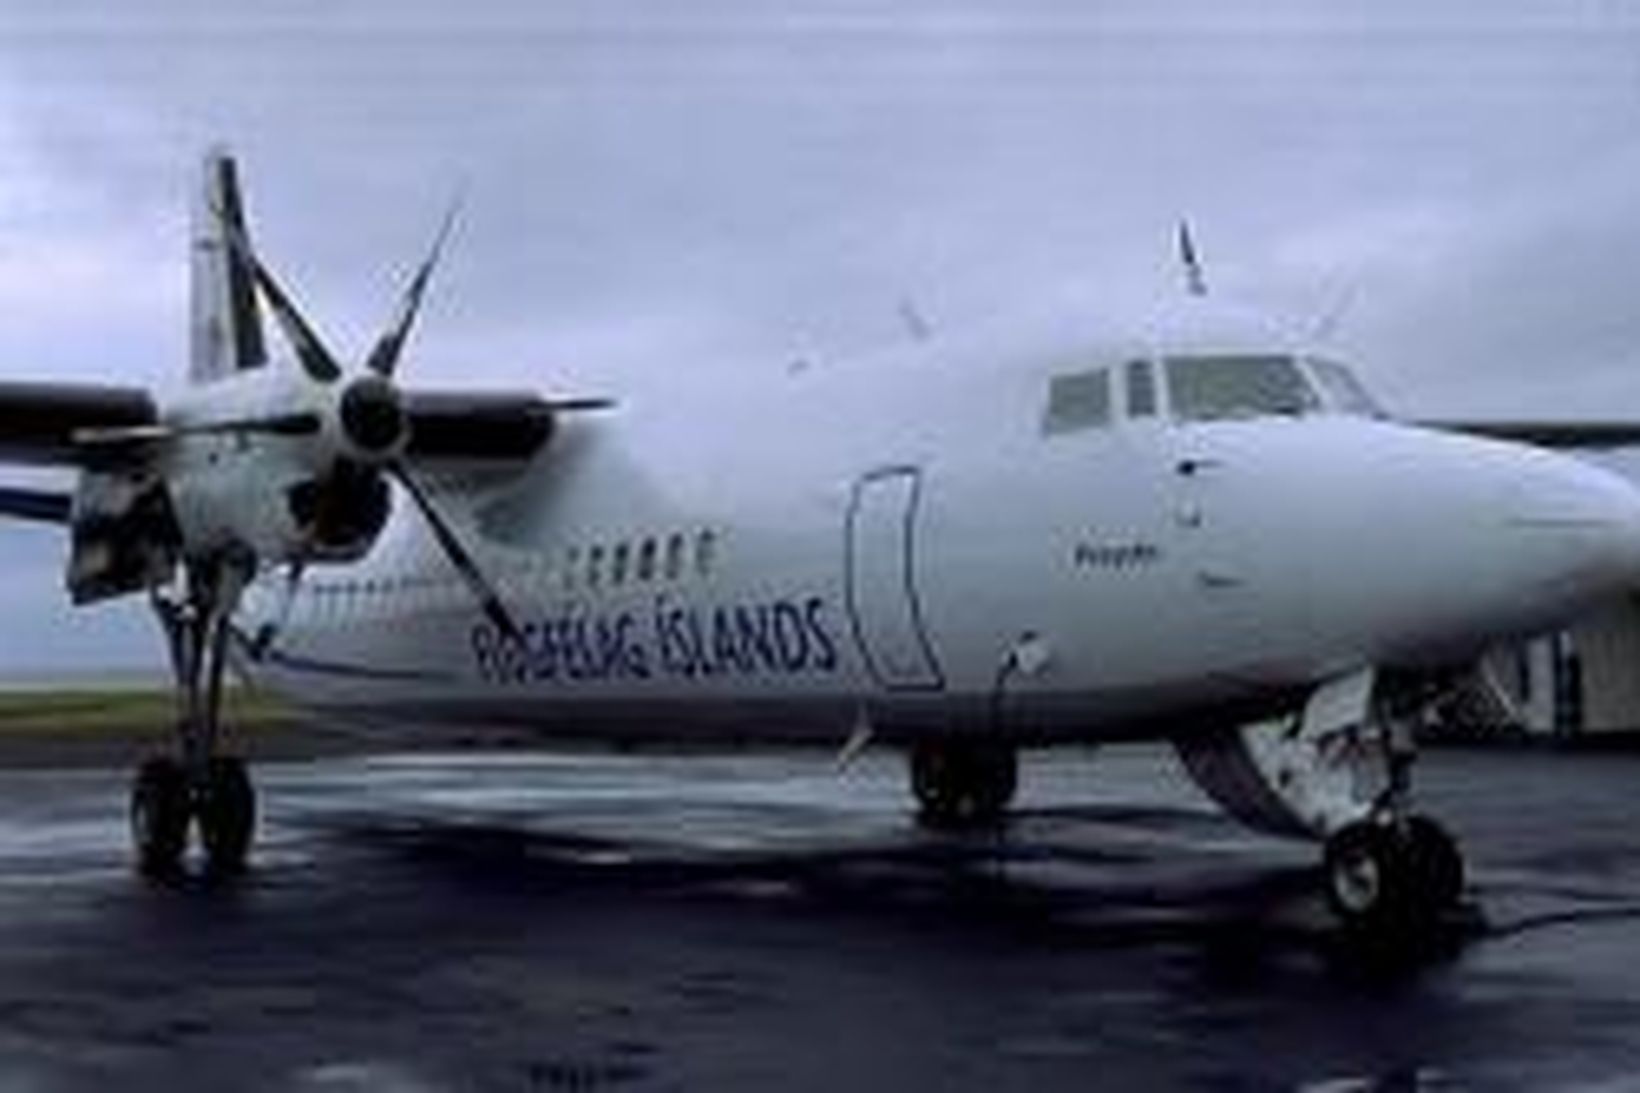 Fokker Flugfélags Íslands.